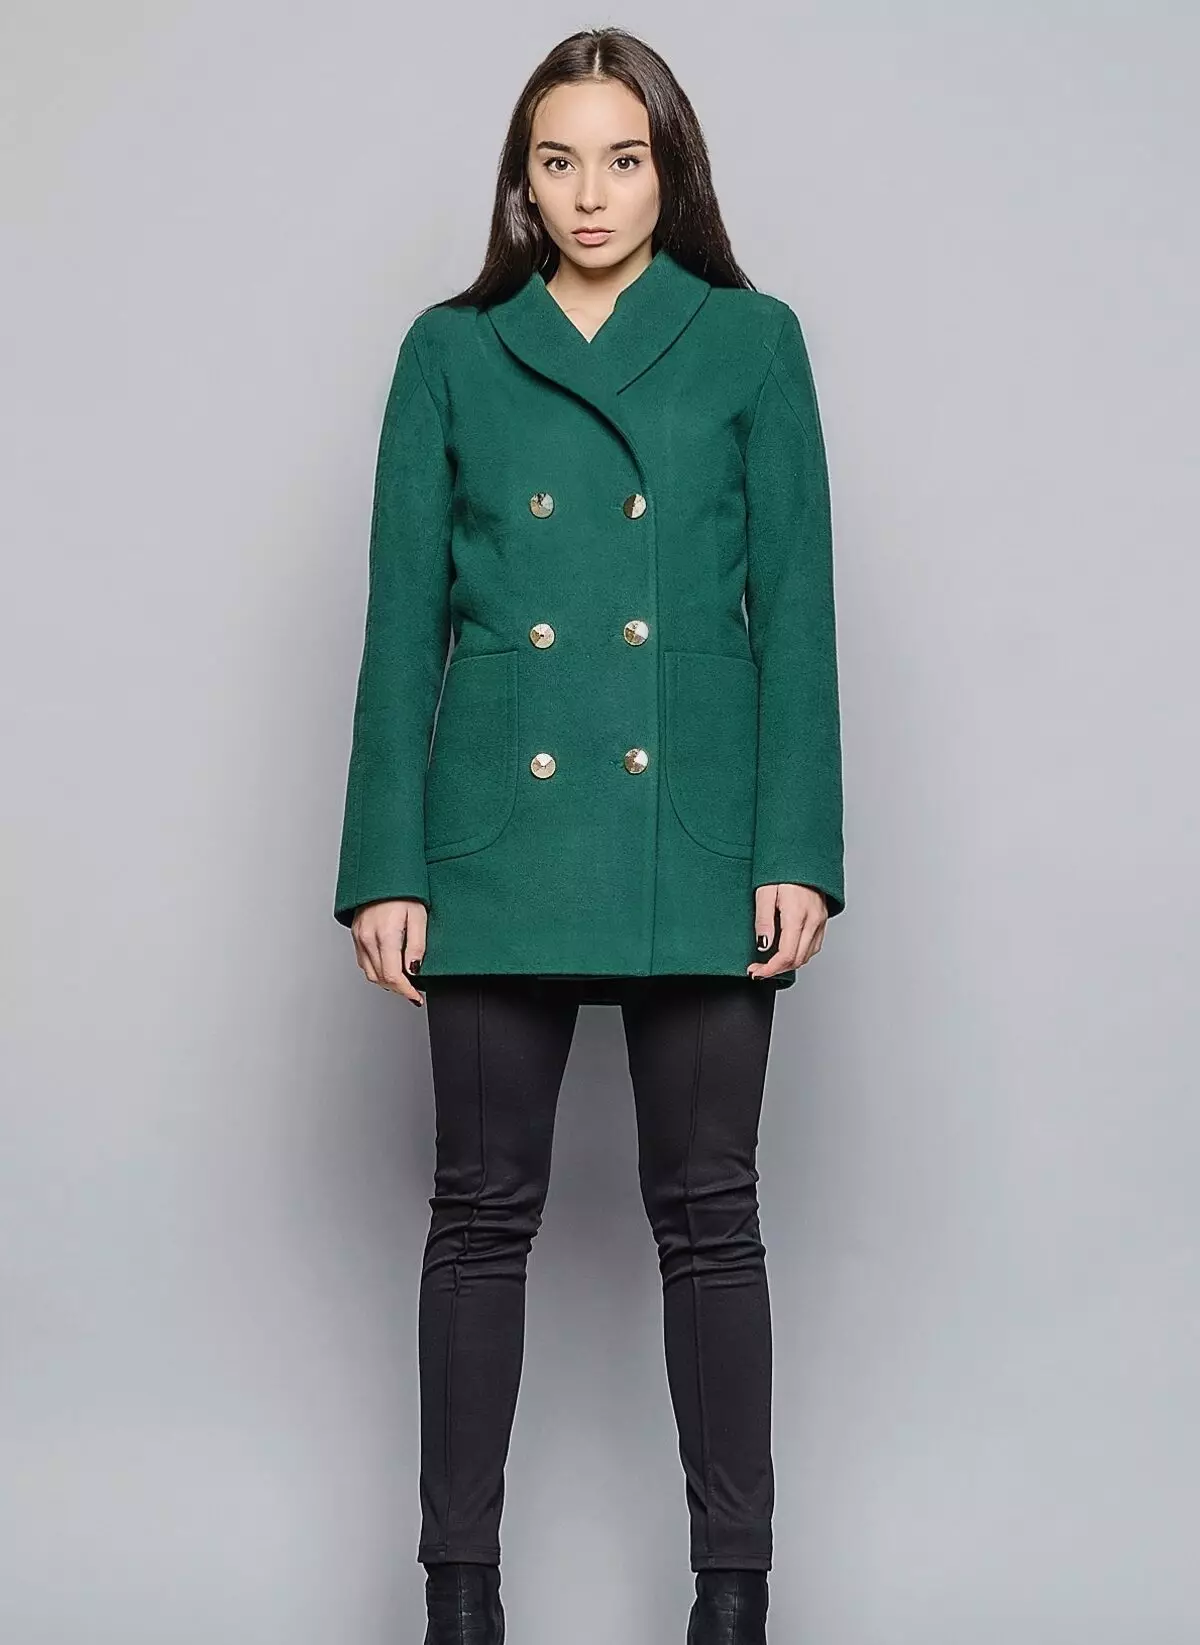 グリーンコート（122写真）を着用するもの：濃い緑、スカーフがフィット、バッグ、アクセサリー、英語の襟付きコート 601_18